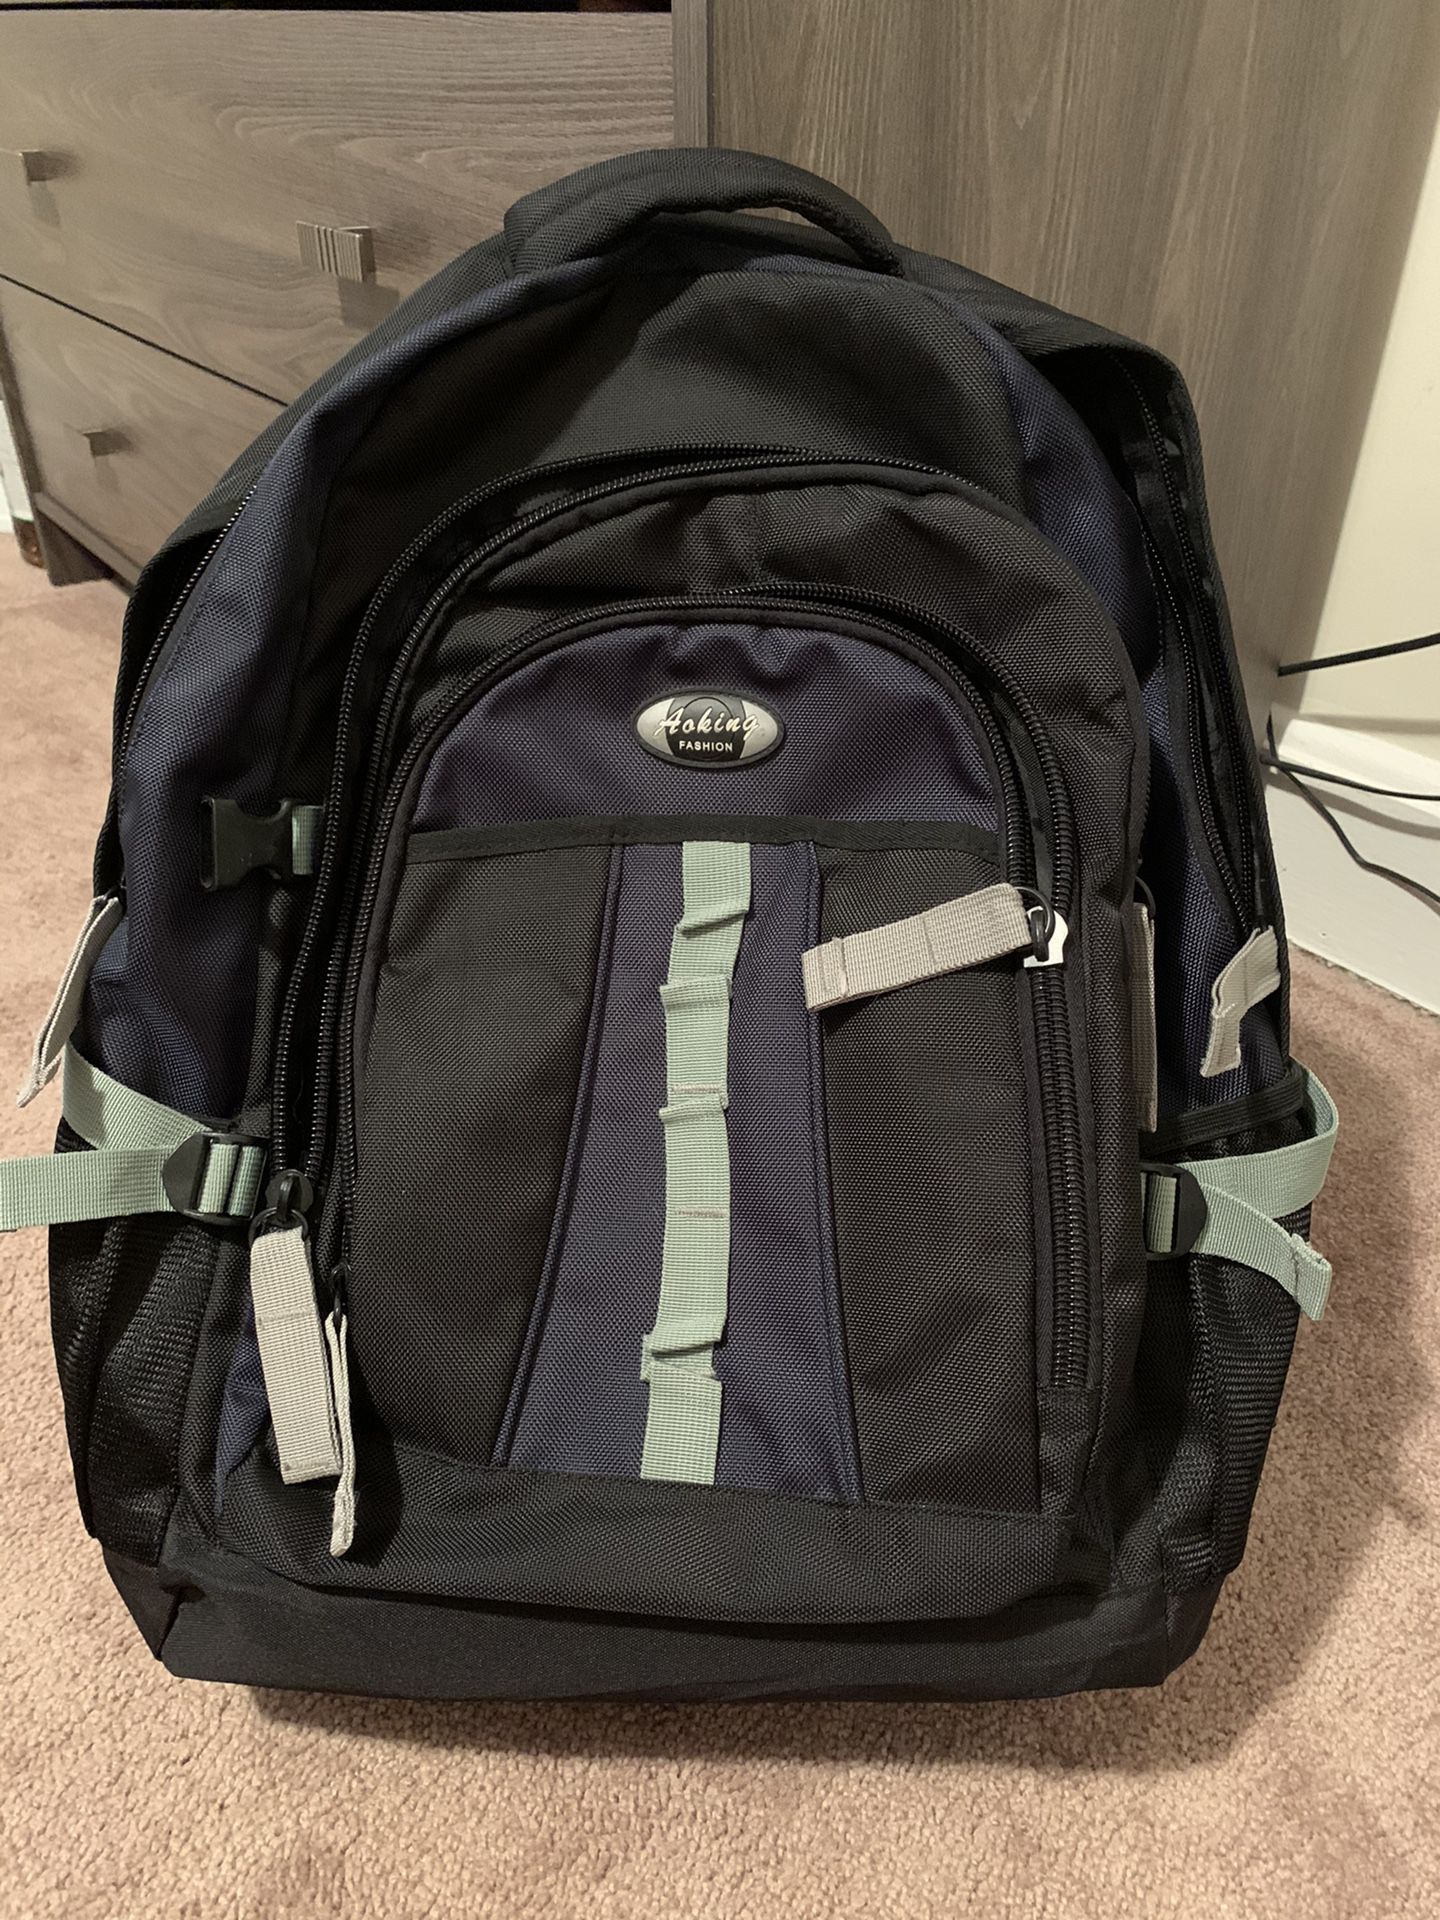 backpack / travel bag